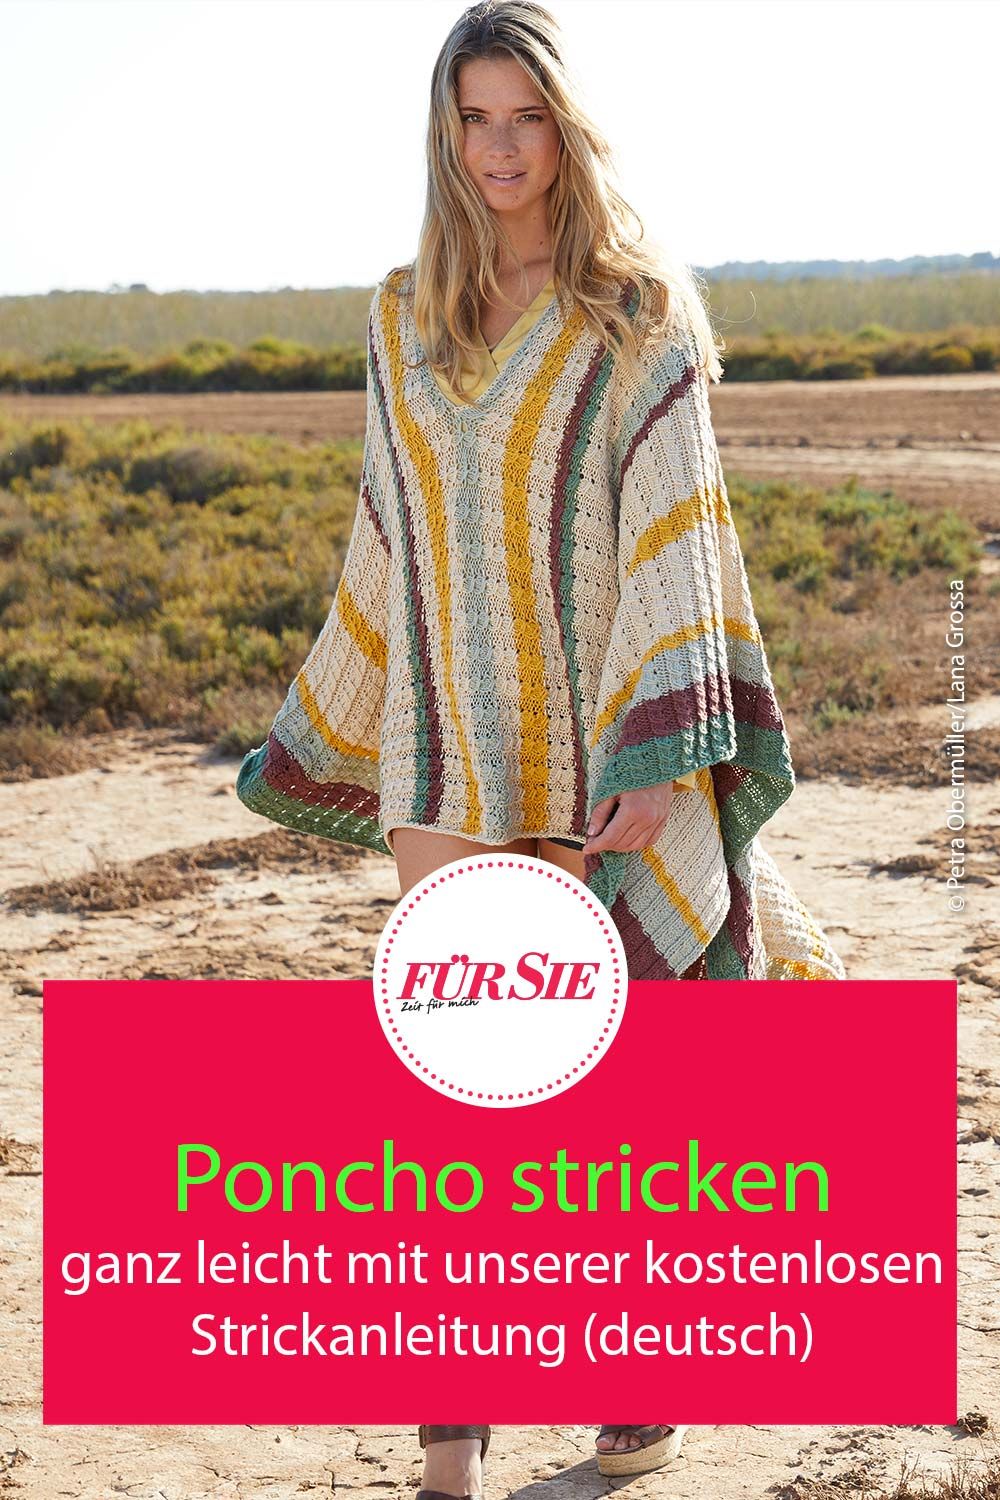 Poncho stricken mit unserer kostenlosen Strickanleitung deutsch